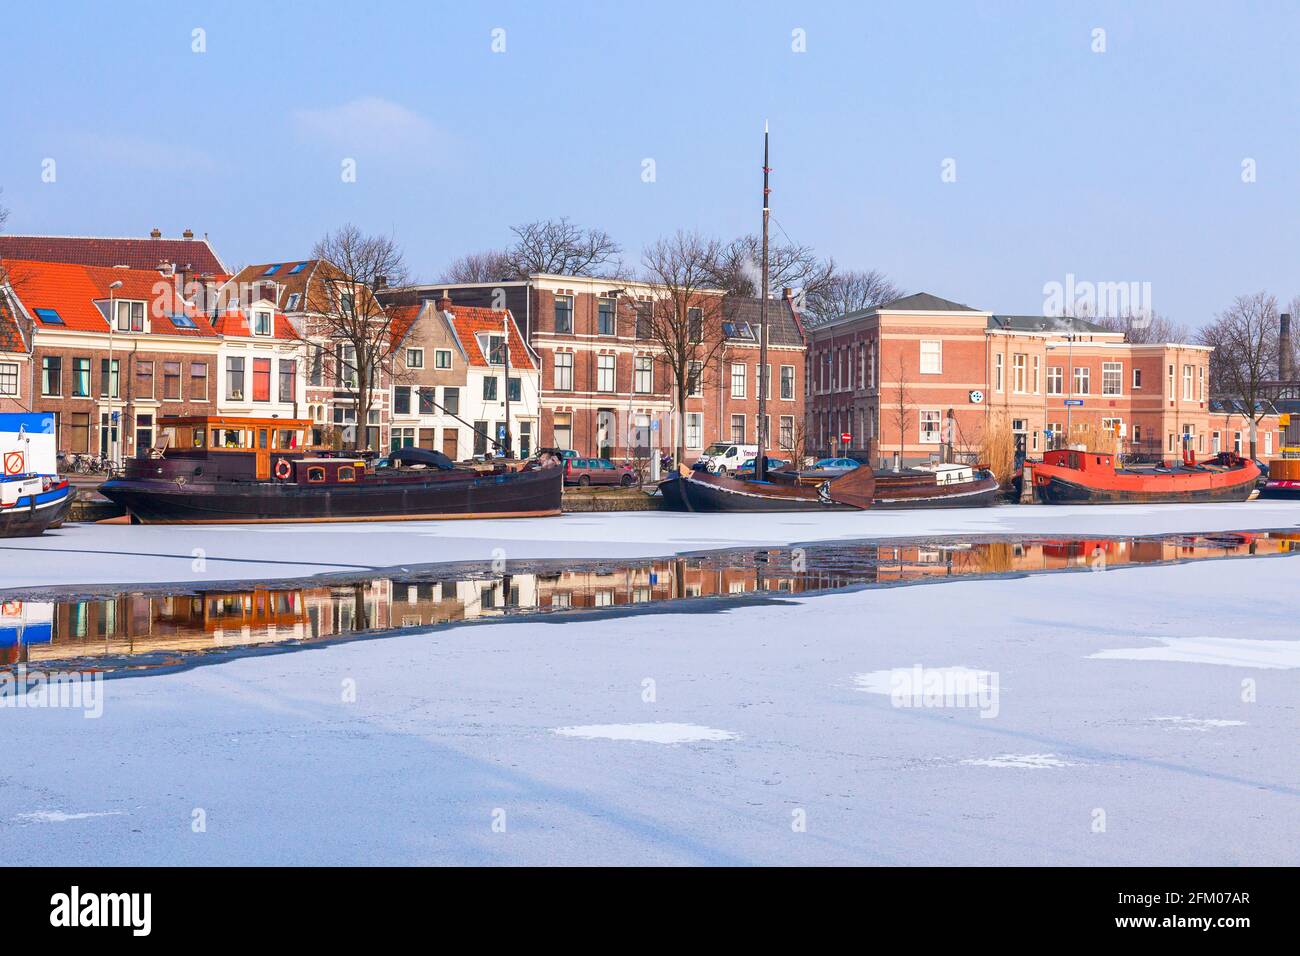 Traditionelle Häuser und Boote, die im gefrorenen Kanal des Flusses Spaarne, Haarlem, Amsterdam, Nordholland, Niederlande, festgemacht sind Stockfoto